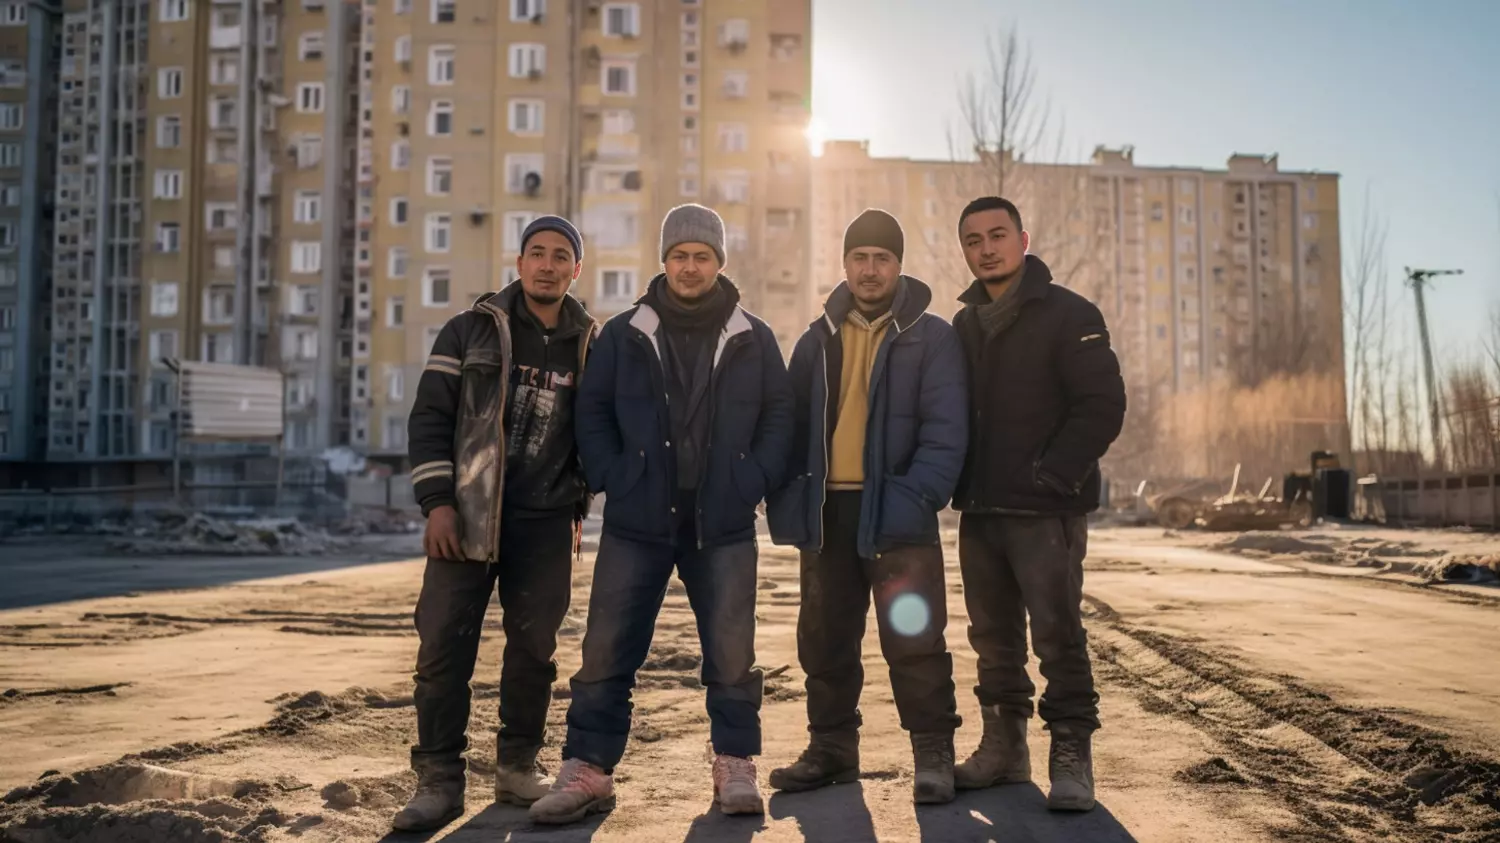 Смыми желанными регионами России для трудовых мигрантов остаются Санкт-Петербург и Москва